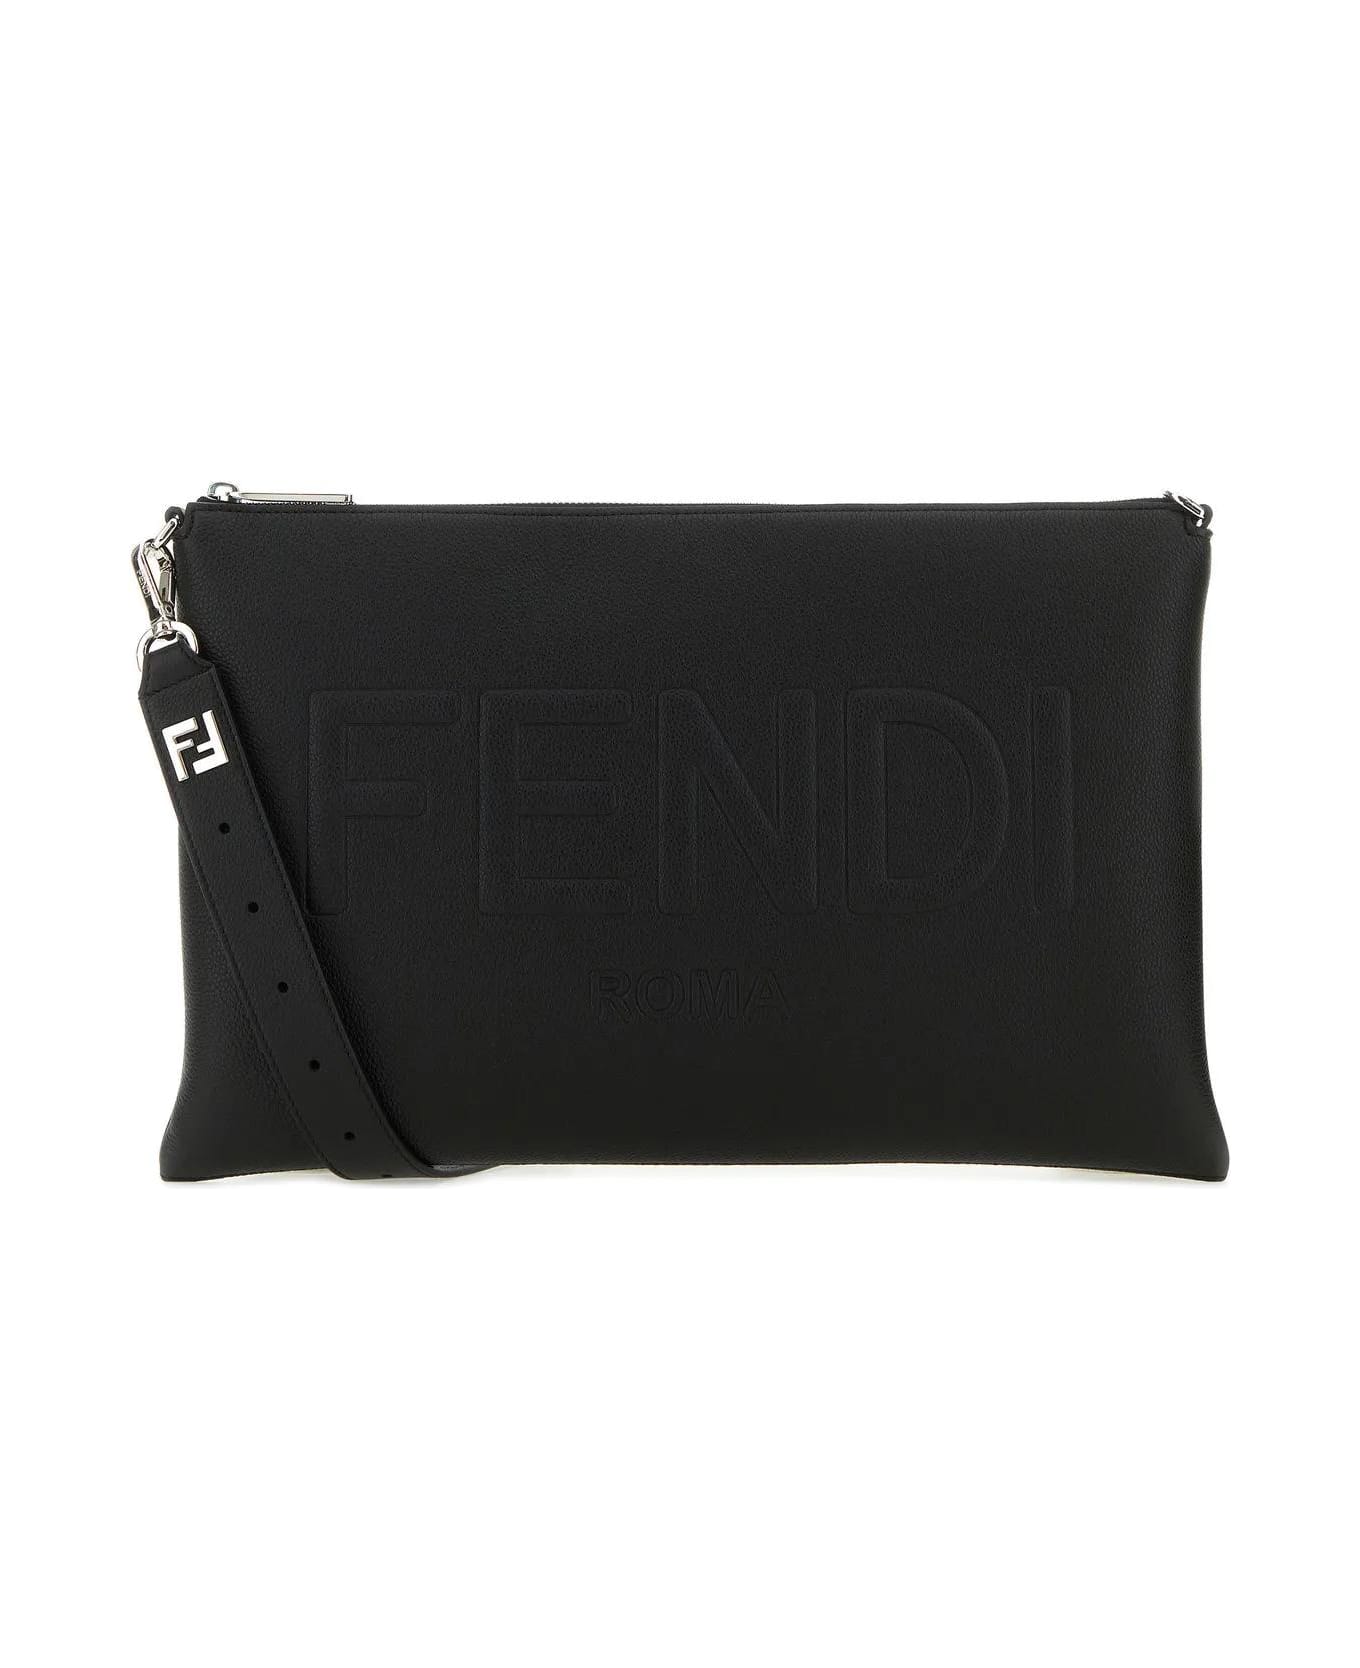 Fendi Black Leather Fendi Roma Shoulder Bag - Black